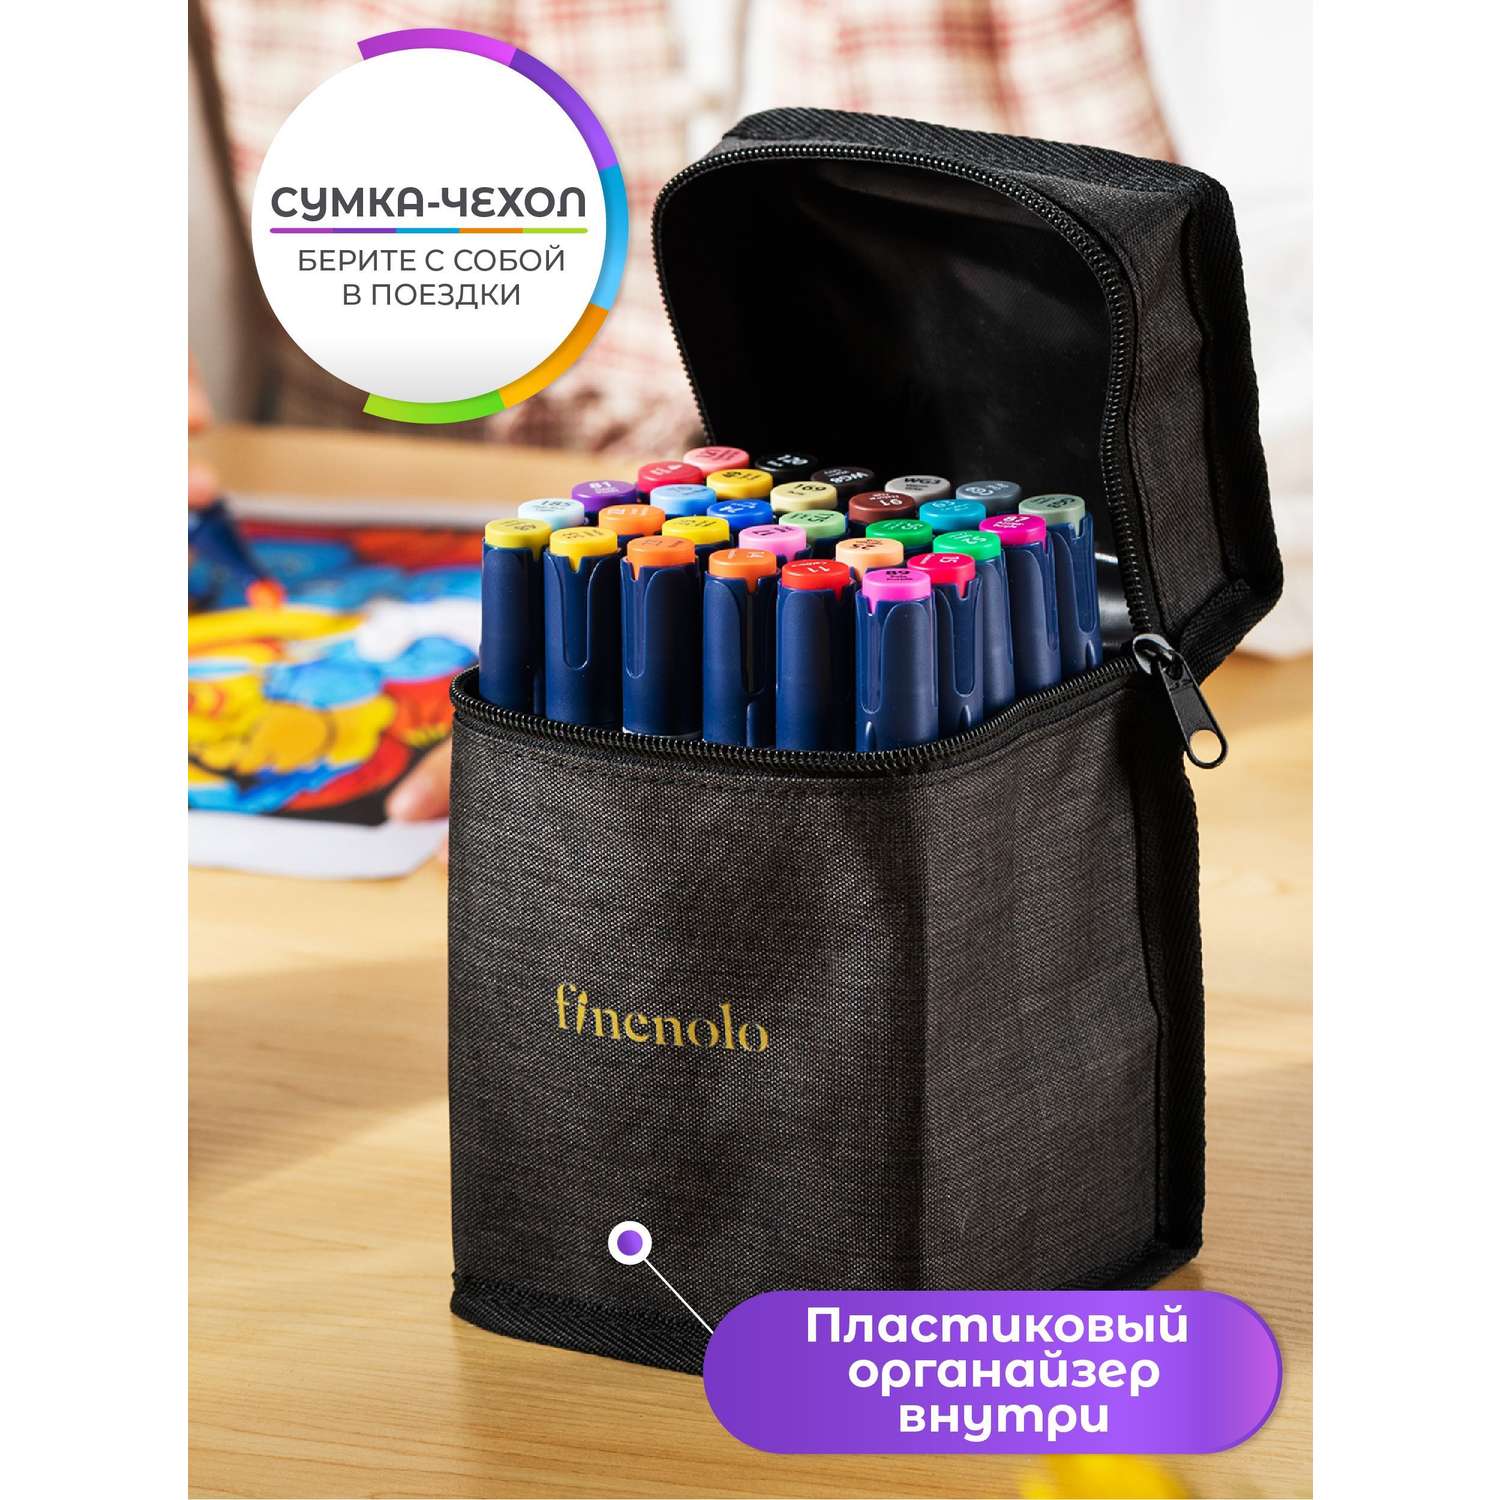 Набор спиртовых маркеров Finenolo 2 пера:кисть+долото 80 цветов в сумке-пенале - фото 4